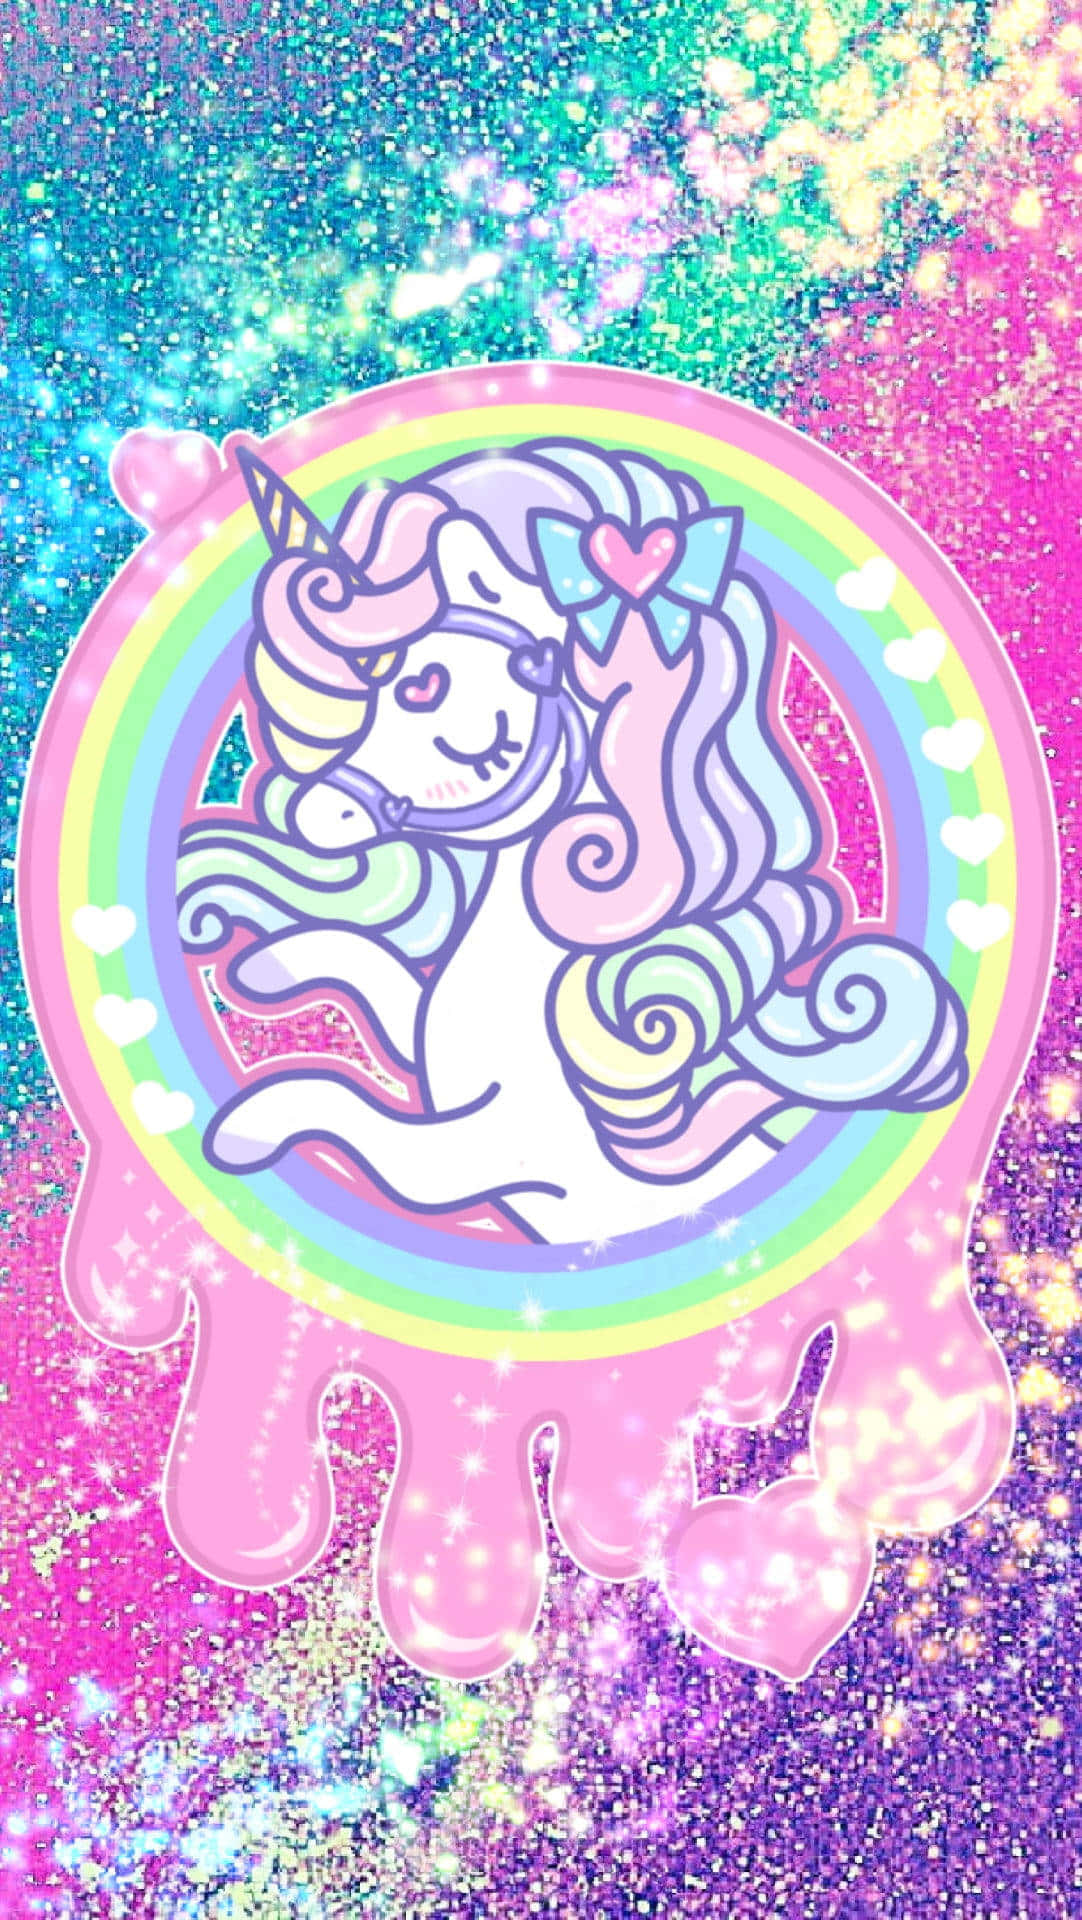 Titolomaestoso Unicorno Arcobaleno Nel Cielo Notturno Celestiale